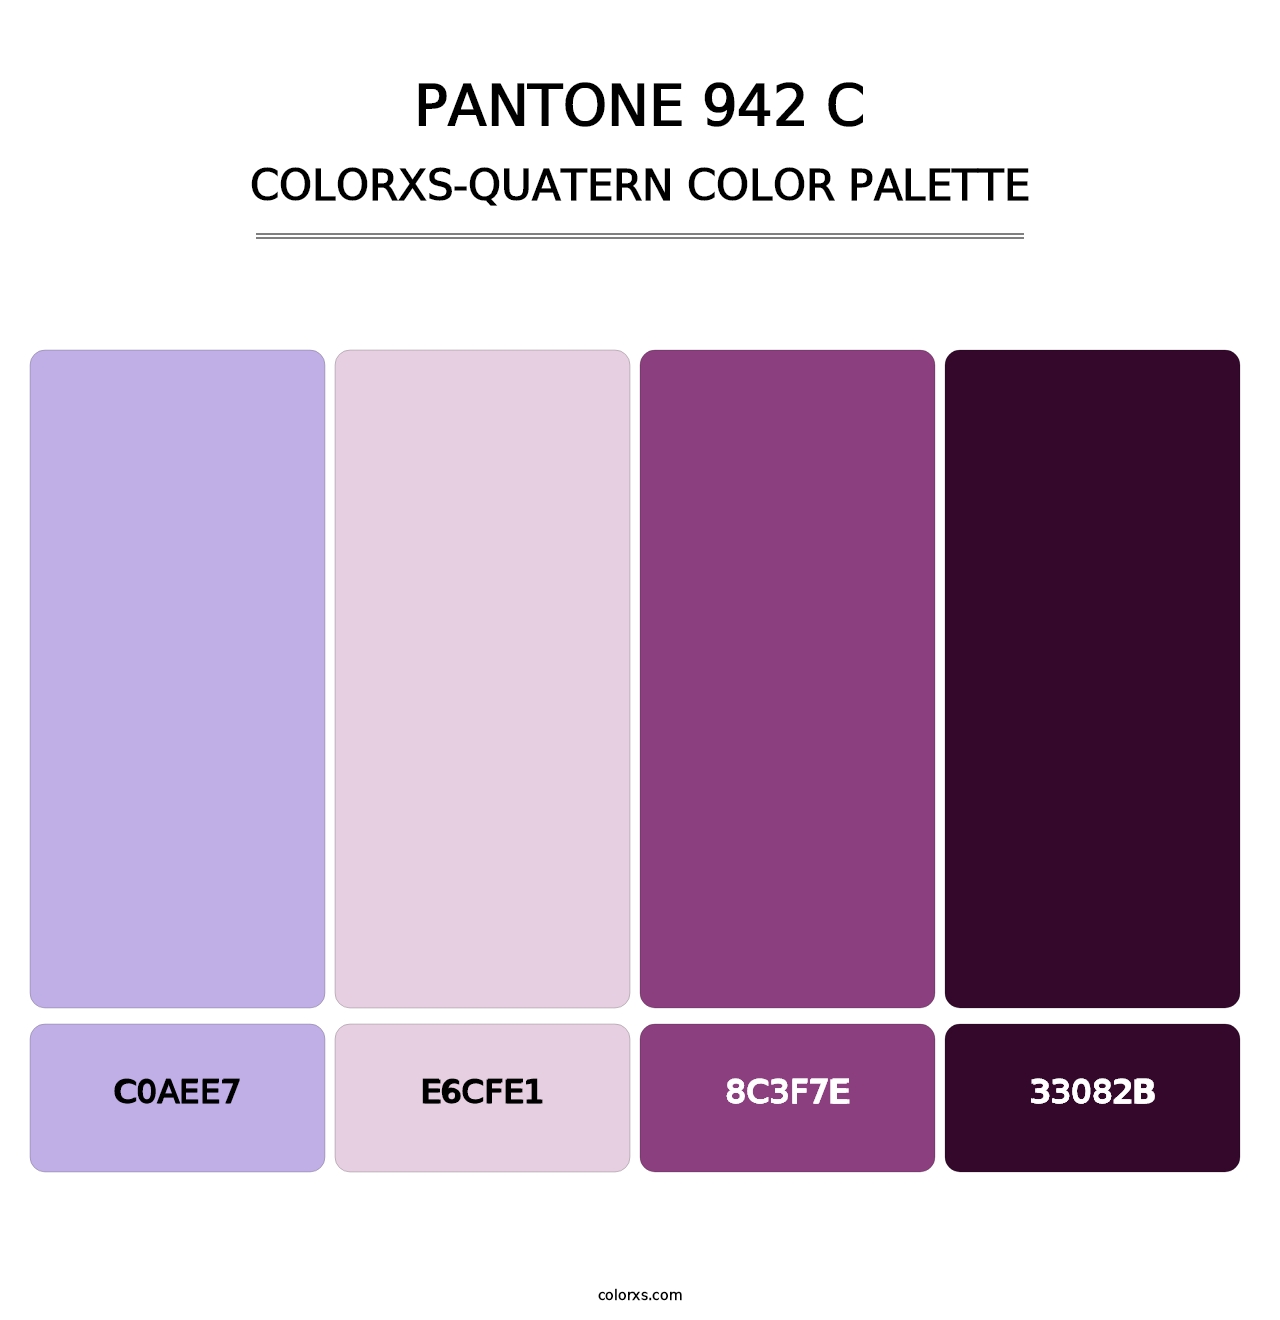 PANTONE 942 C - Colorxs Quatern Palette